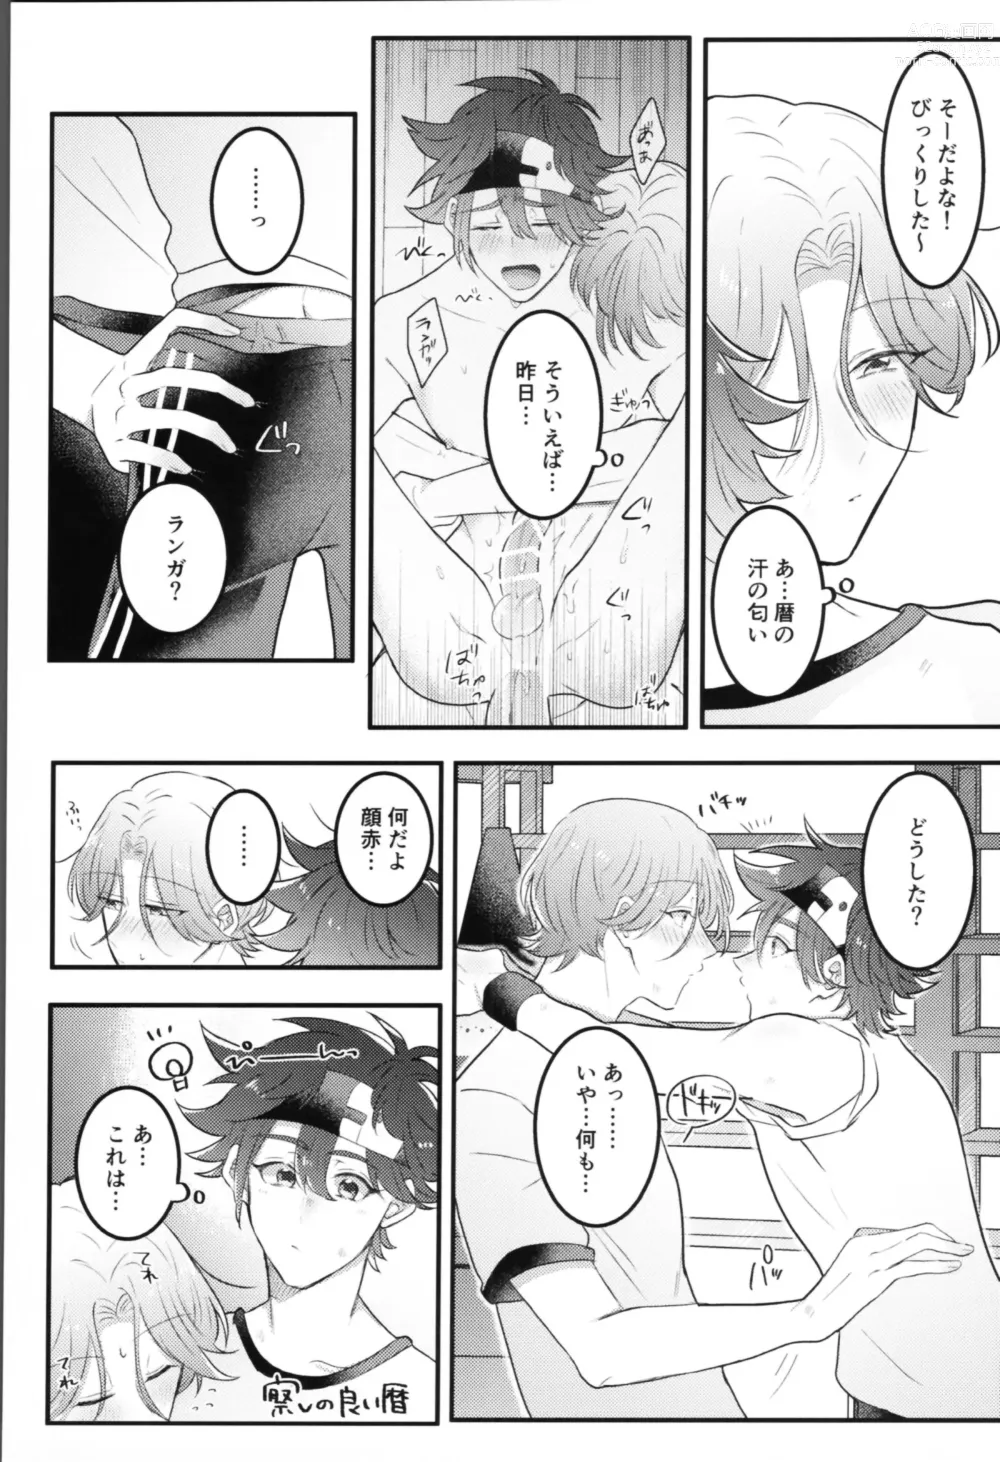 Page 6 of doujinshi Sense-saborimasu